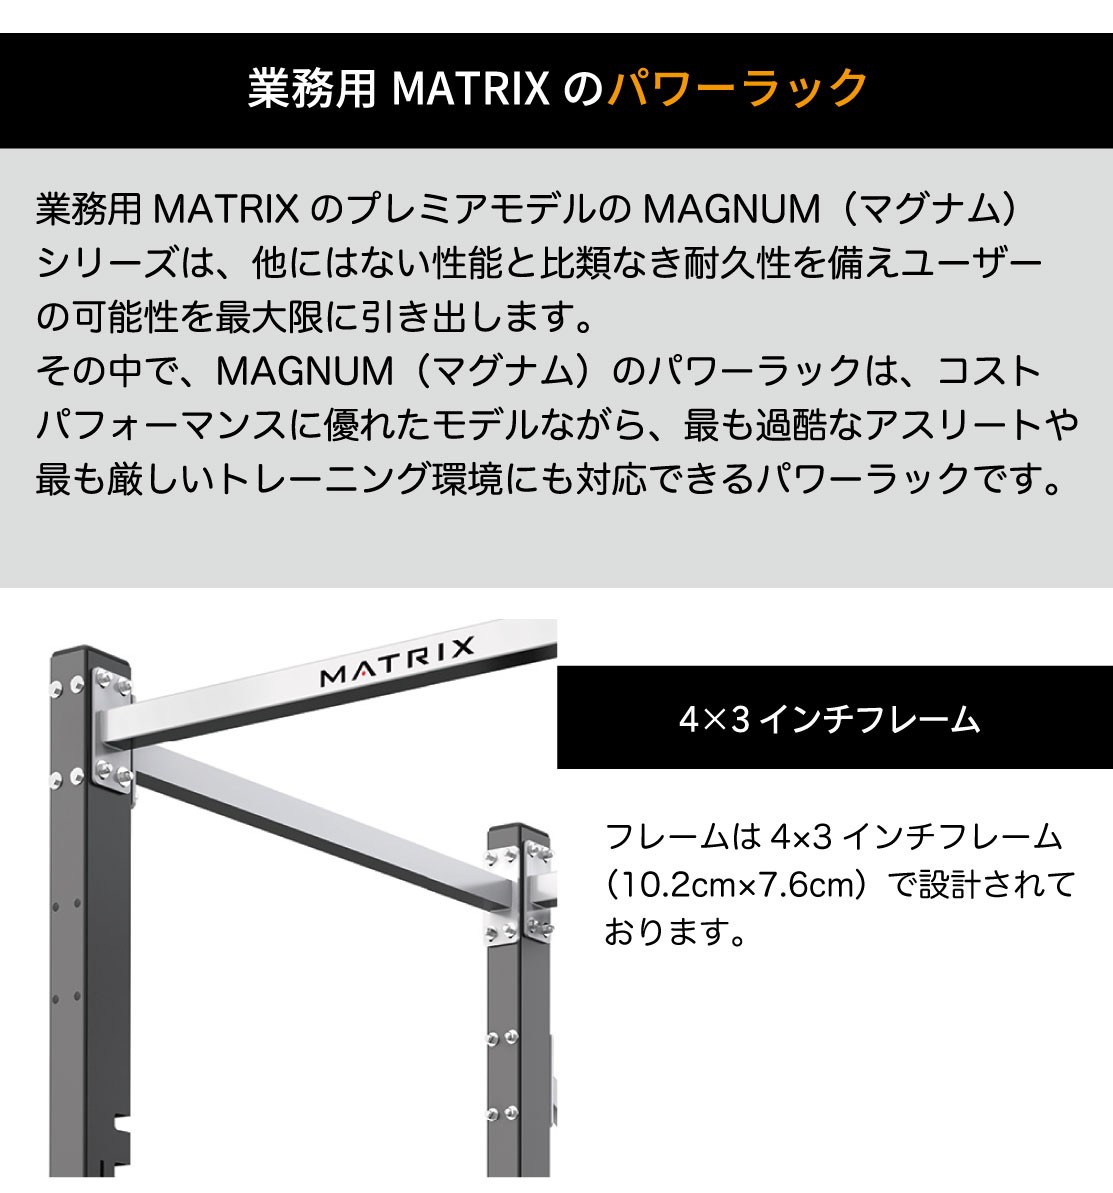 Matrix MG-A47 Power Rack